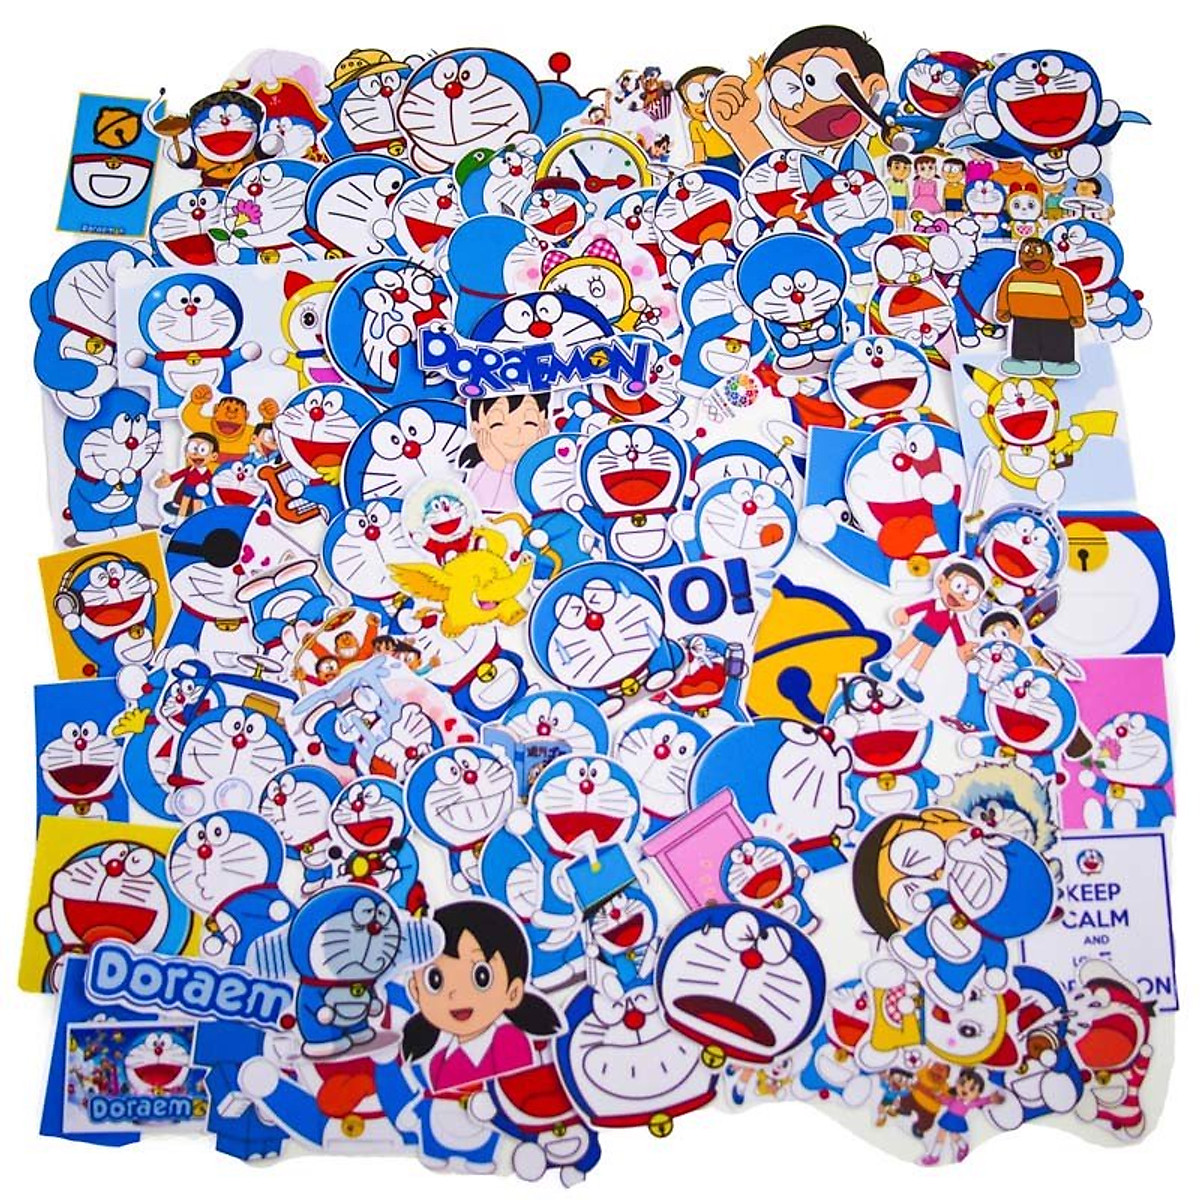 Bạn yêu thích Doraemon? Hãy tìm hiểu về chiếc sticker hình dán Doraemon đáng yêu này. Đặt chúng lên điện thoại, laptop hoặc dụng cụ học tập của bạn để tạo thêm không gian năng động và trẻ trung.